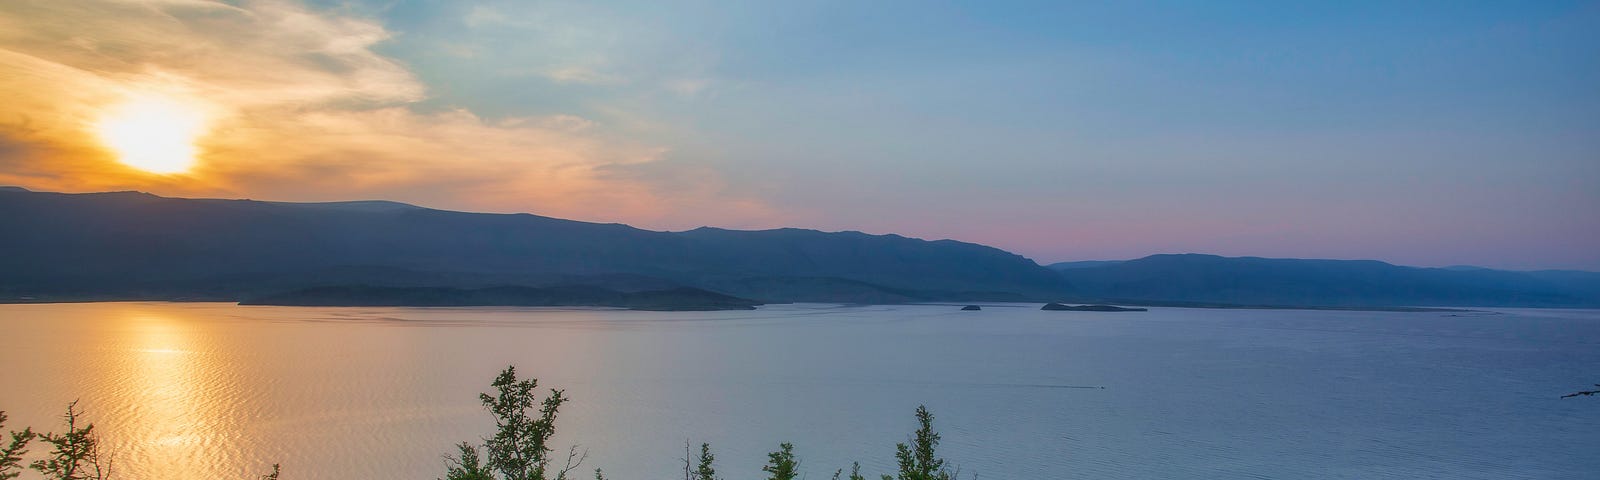 Sunrise at Lake Baikal